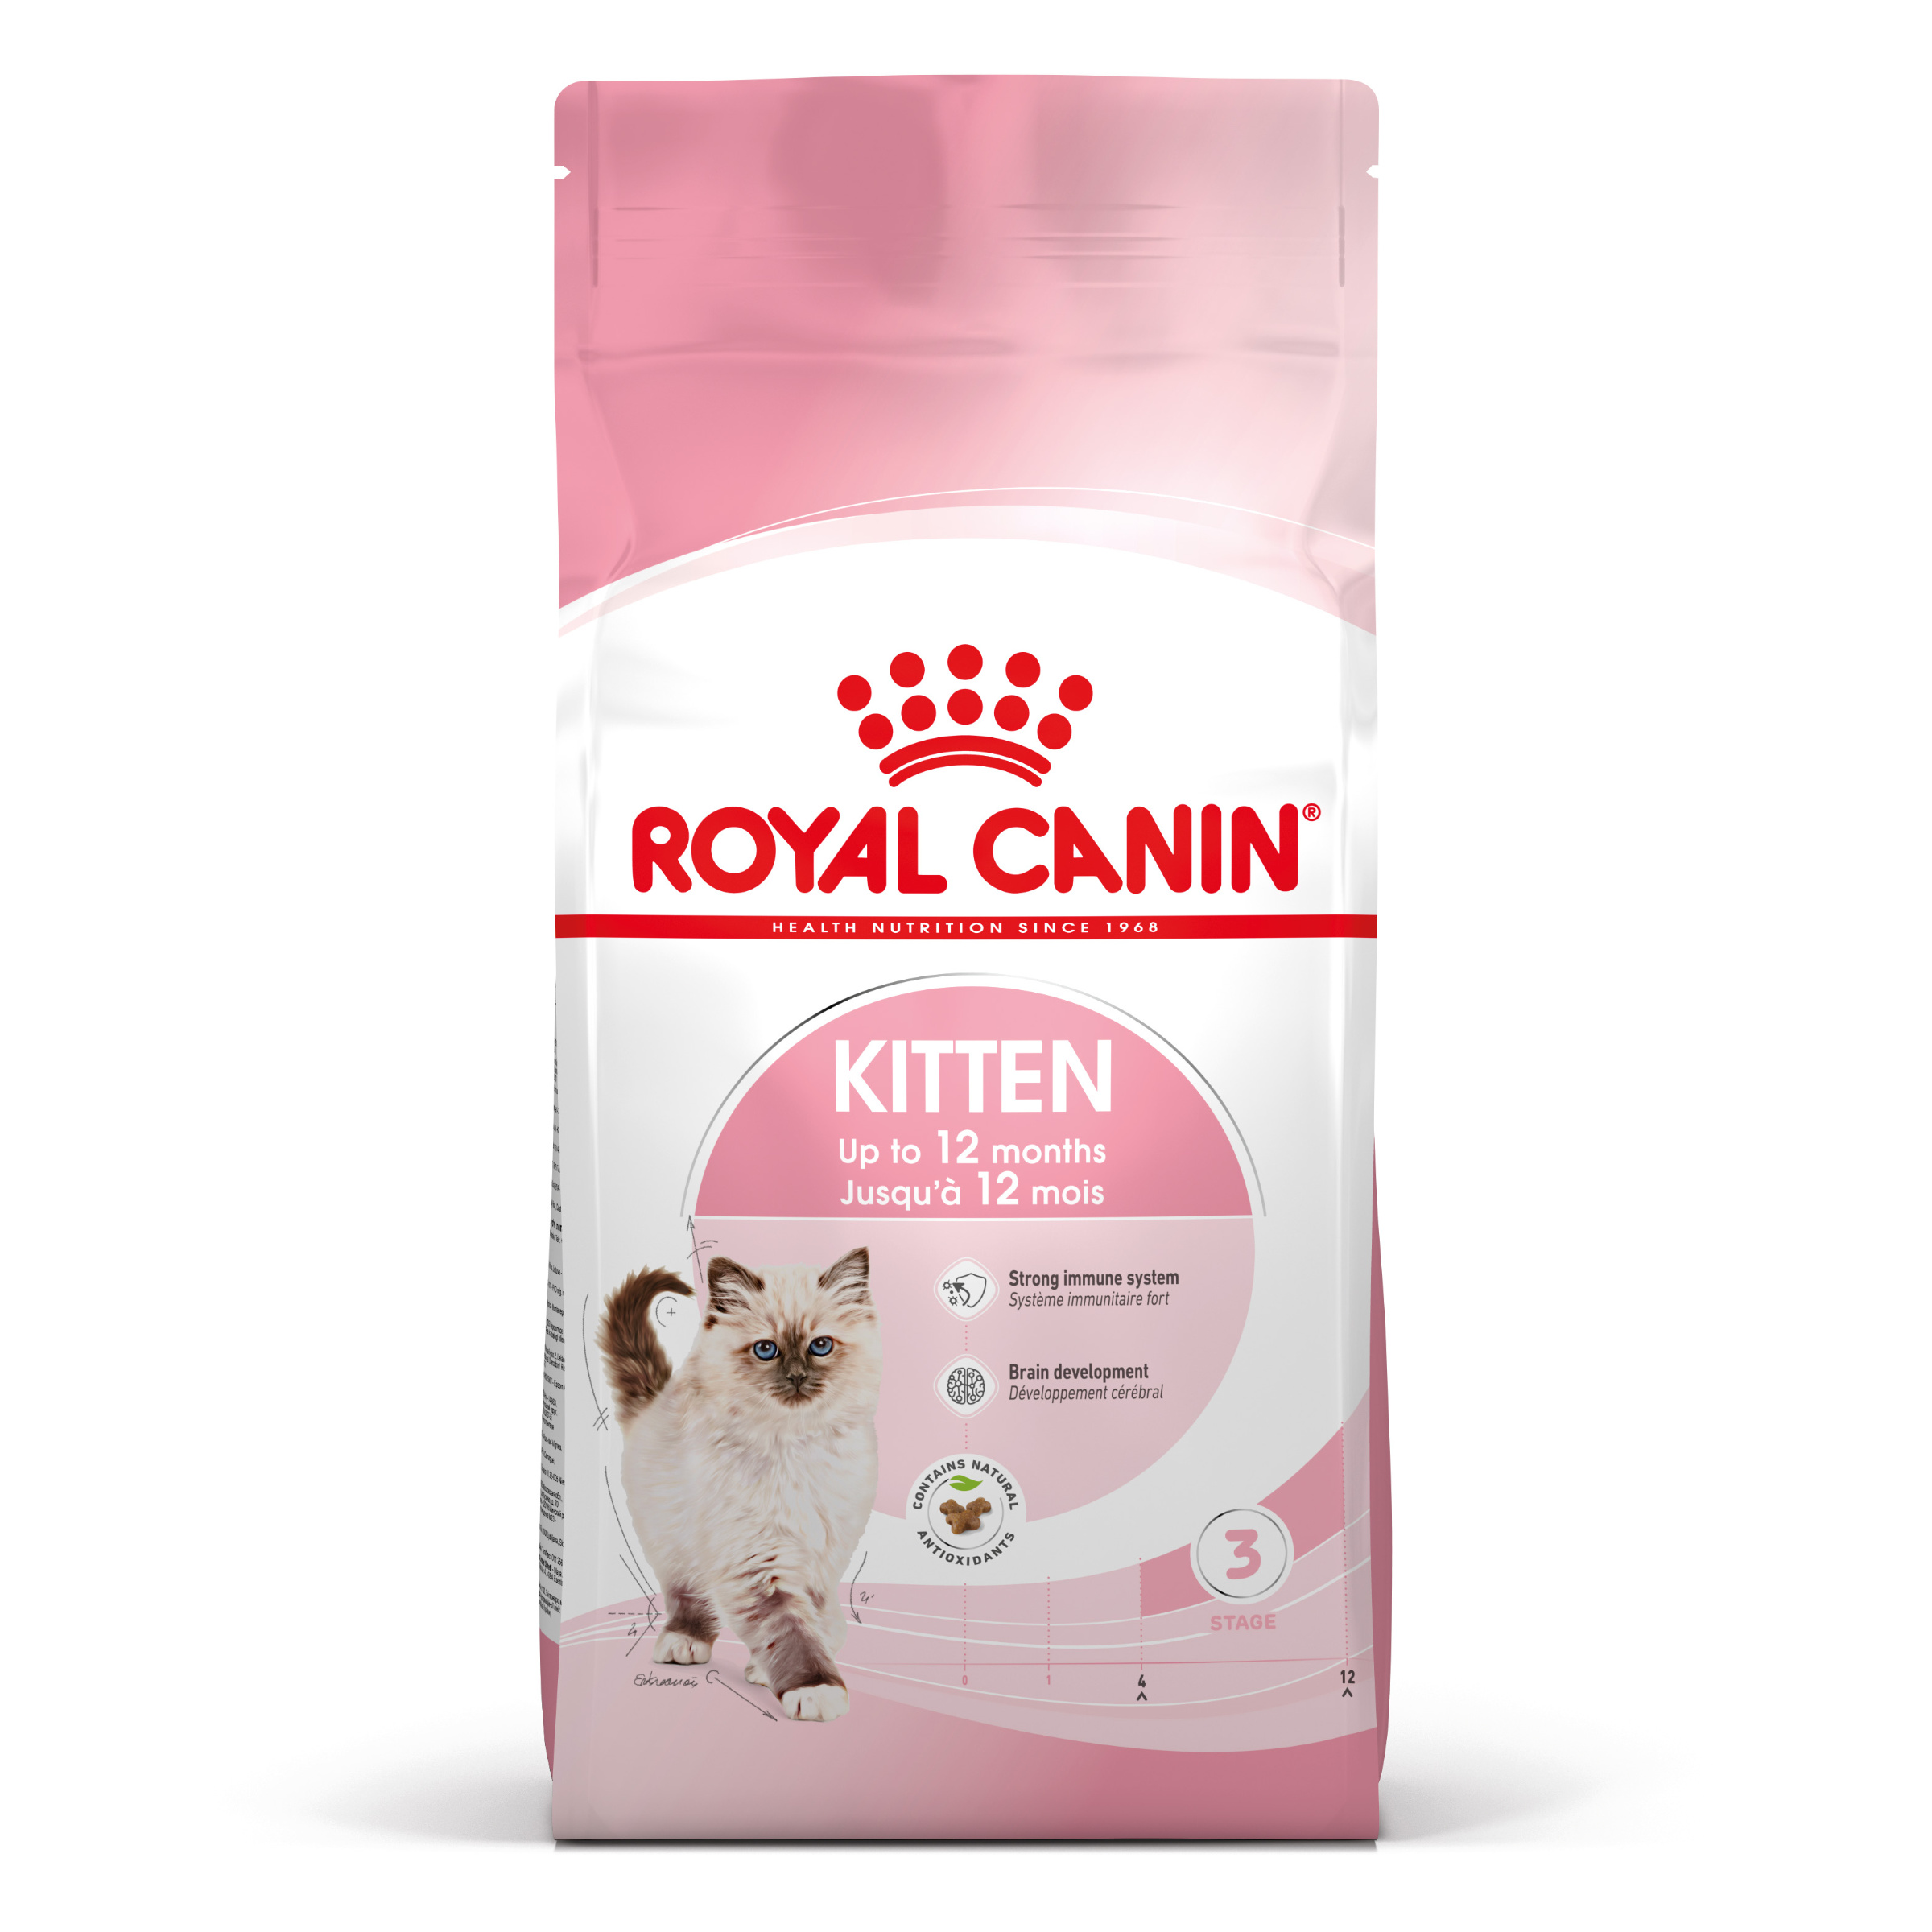 Royal Canin Kitten - Aliment pour chats - Spécial chatons. 2ème âge (jusqu'à 12 mois) - 400g